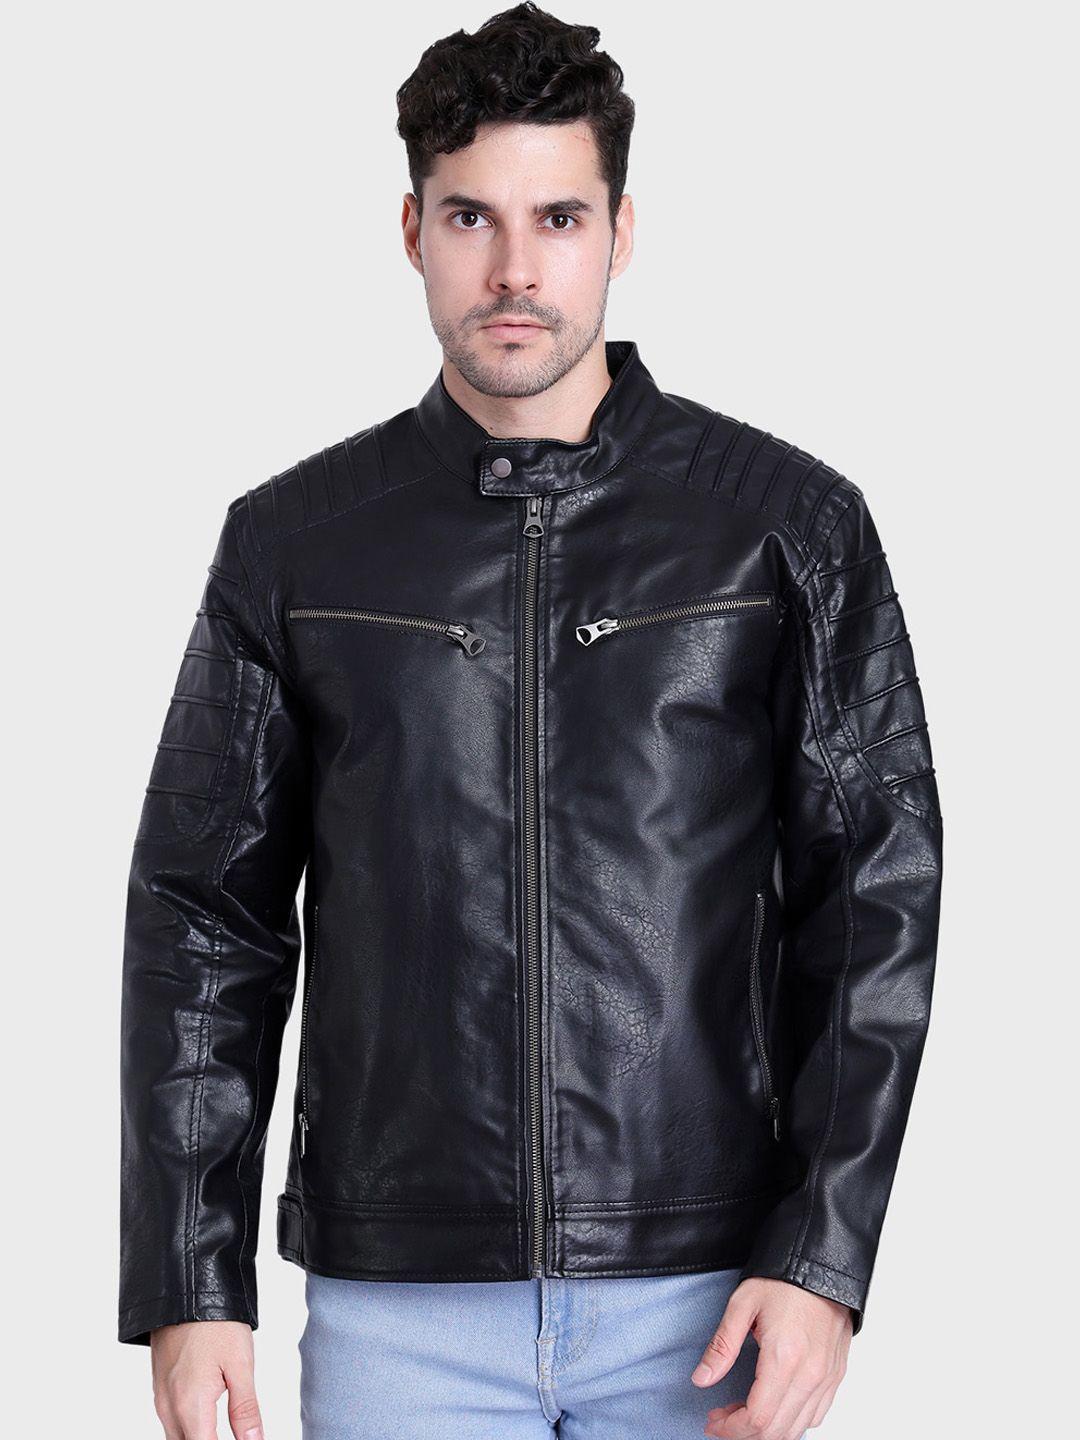 justanned stand collar biker jacket